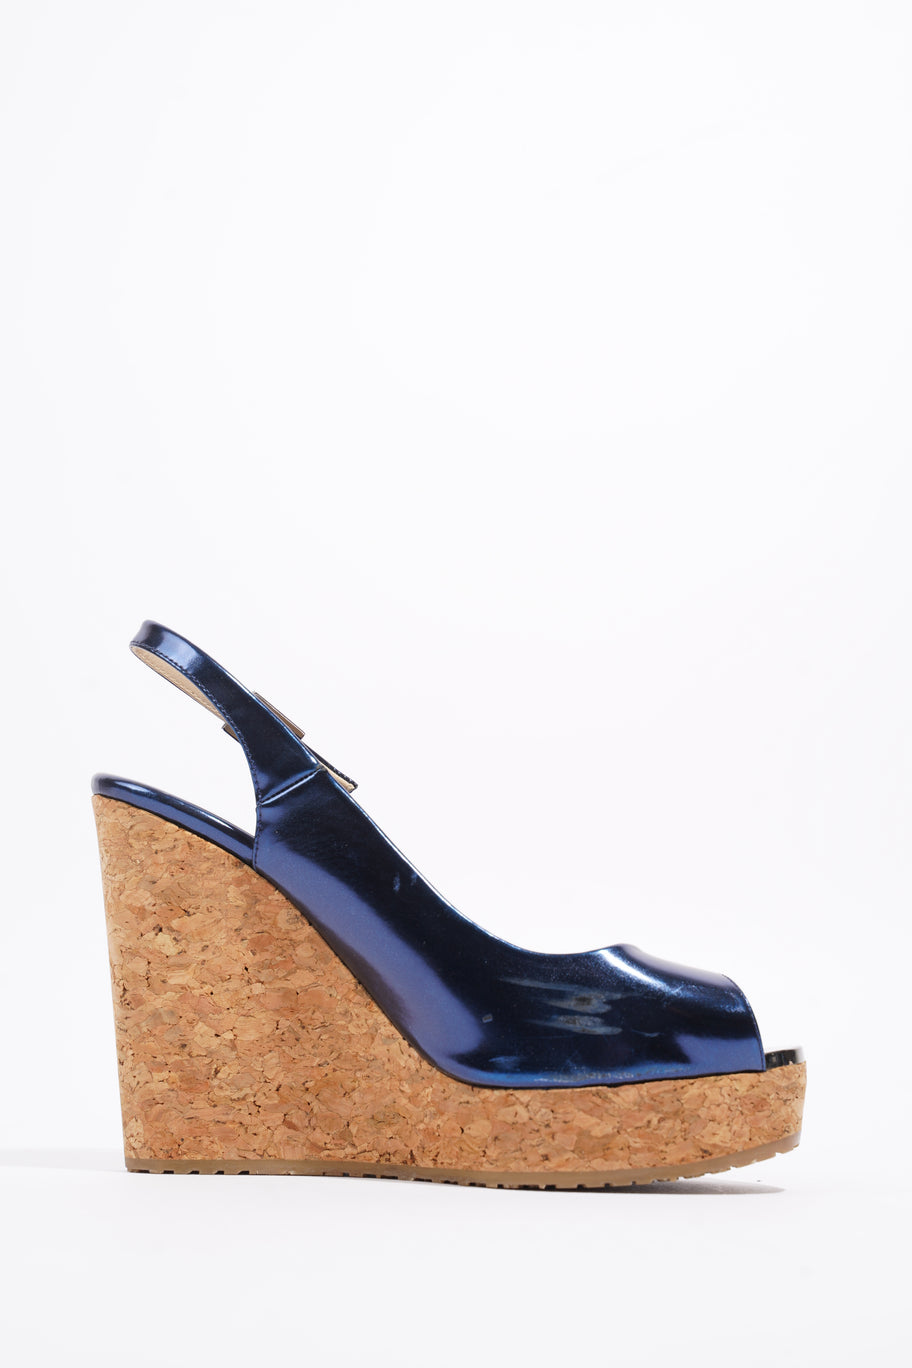 Wedge Sandal 110 Blue Patent Leather EU 37 UK 4 Image 4